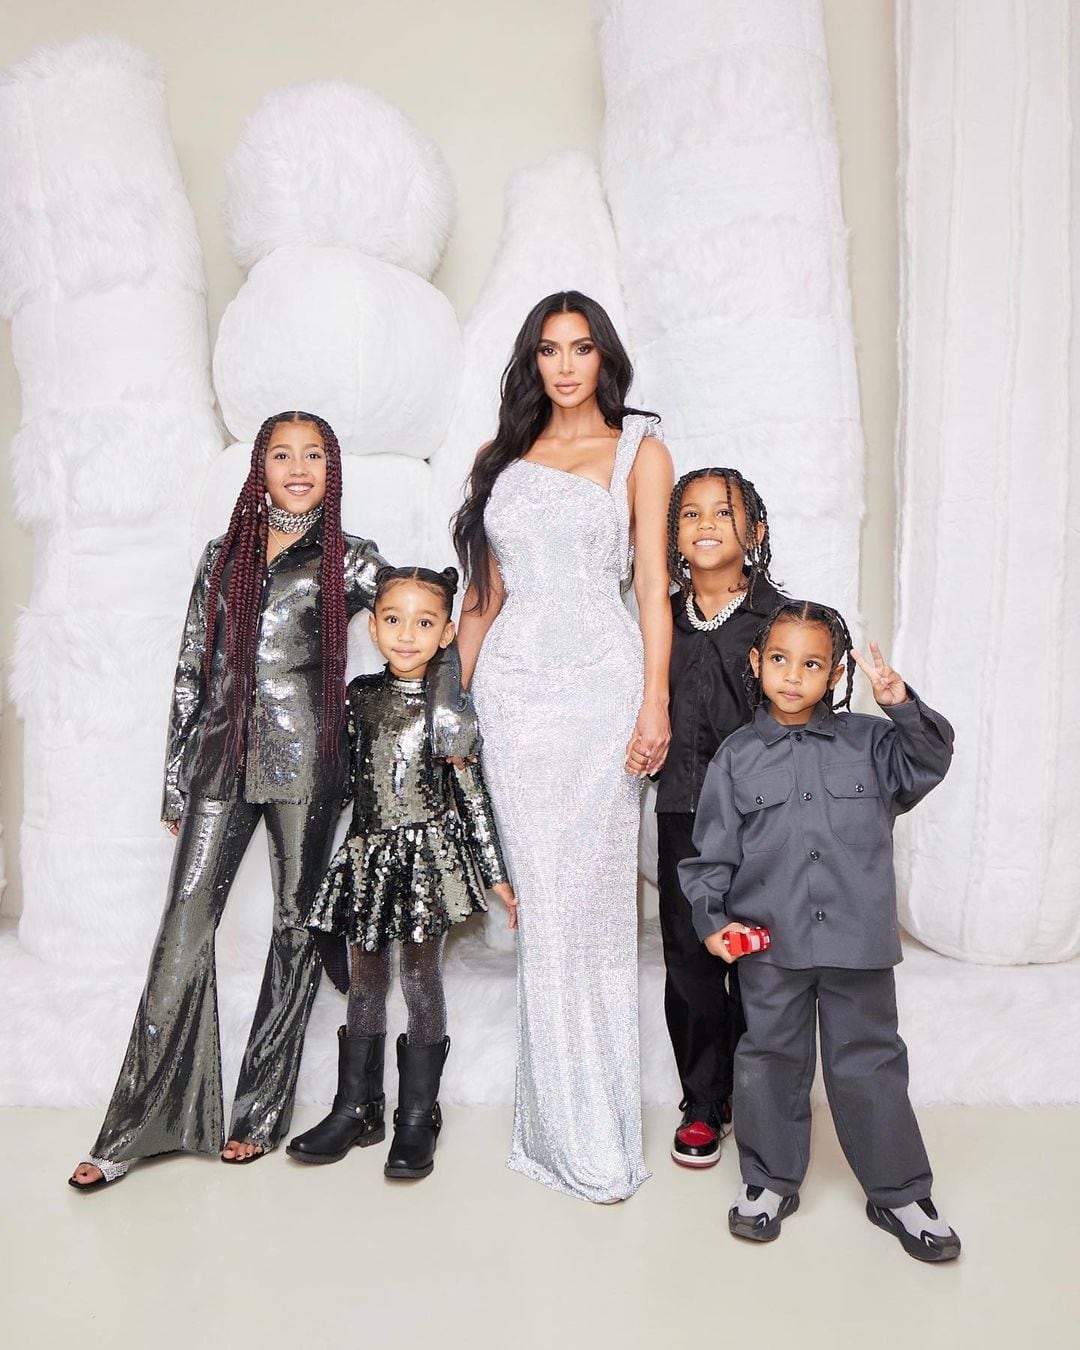 La mediática Kardashian sabe muy bien el tesoro que tiene con sus hijos. Foto: Instagram @kimkardashian.